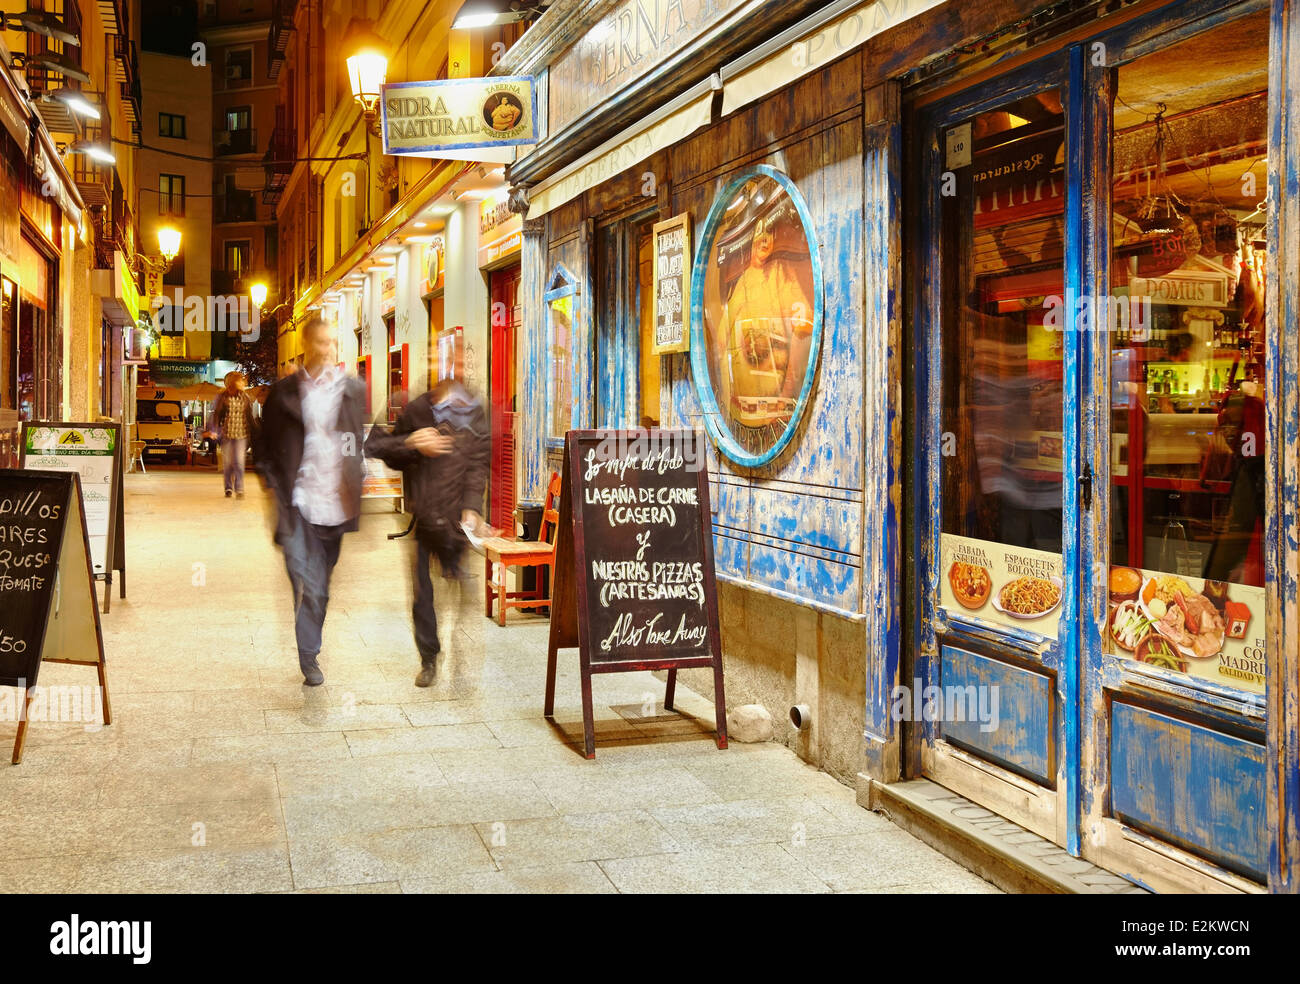 Le centre-ville de nombreux restaurants et bars à tapas. Madrid. Espagne Banque D'Images